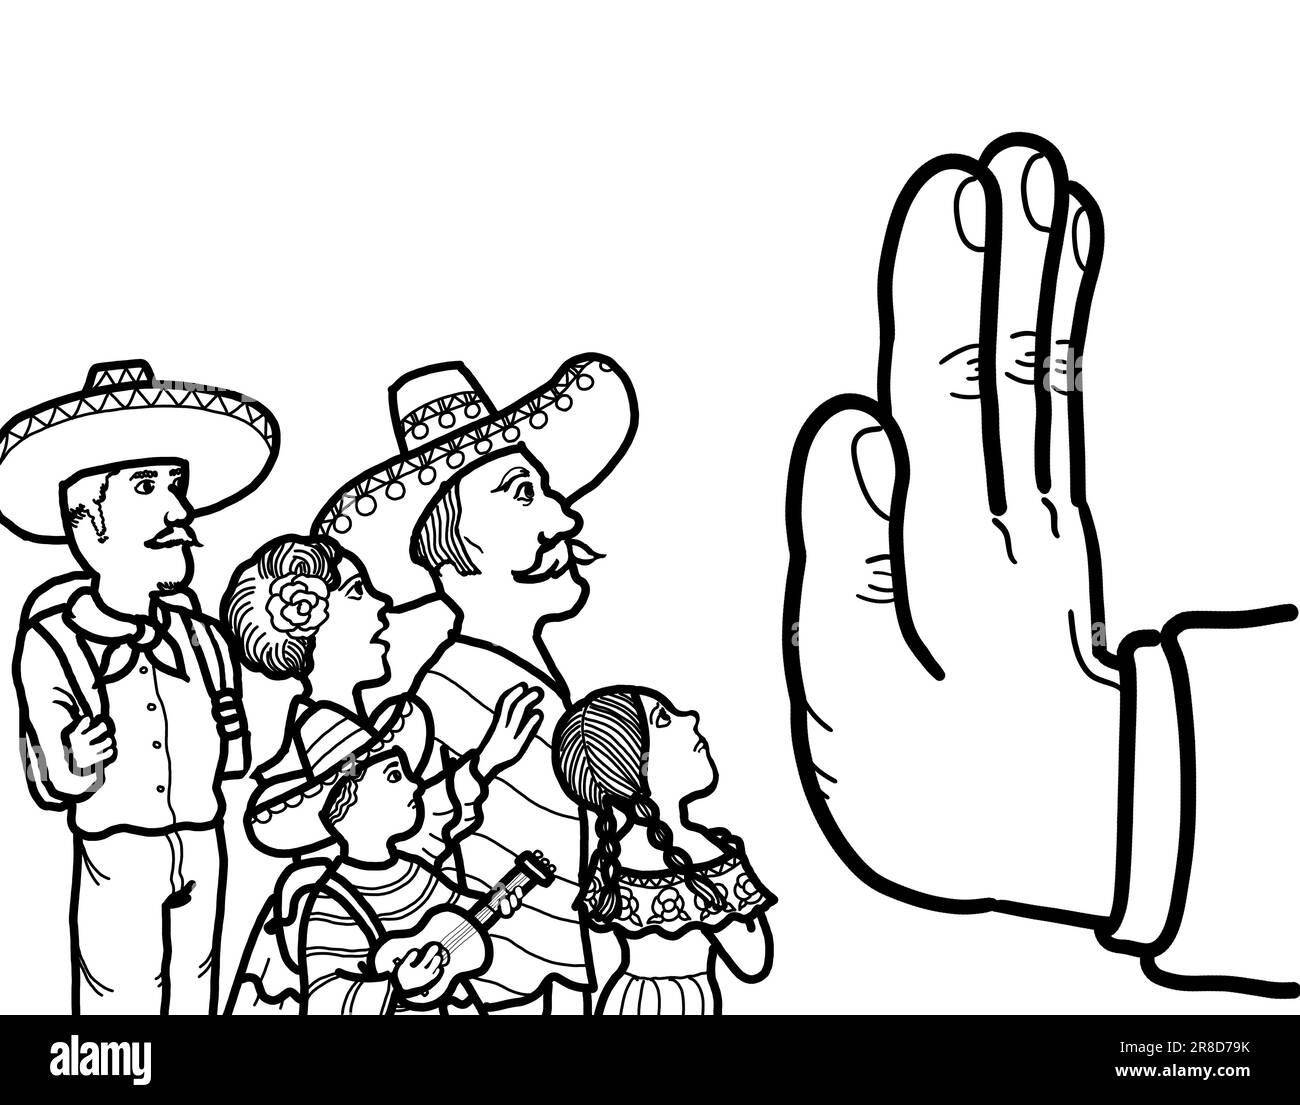 Eine Hand symbolisiert die Verhinderung der illegalen Einwanderung Mexikos, der Einreise von Flüchtlingen und Asylbewerbern in das Land. Stockfoto